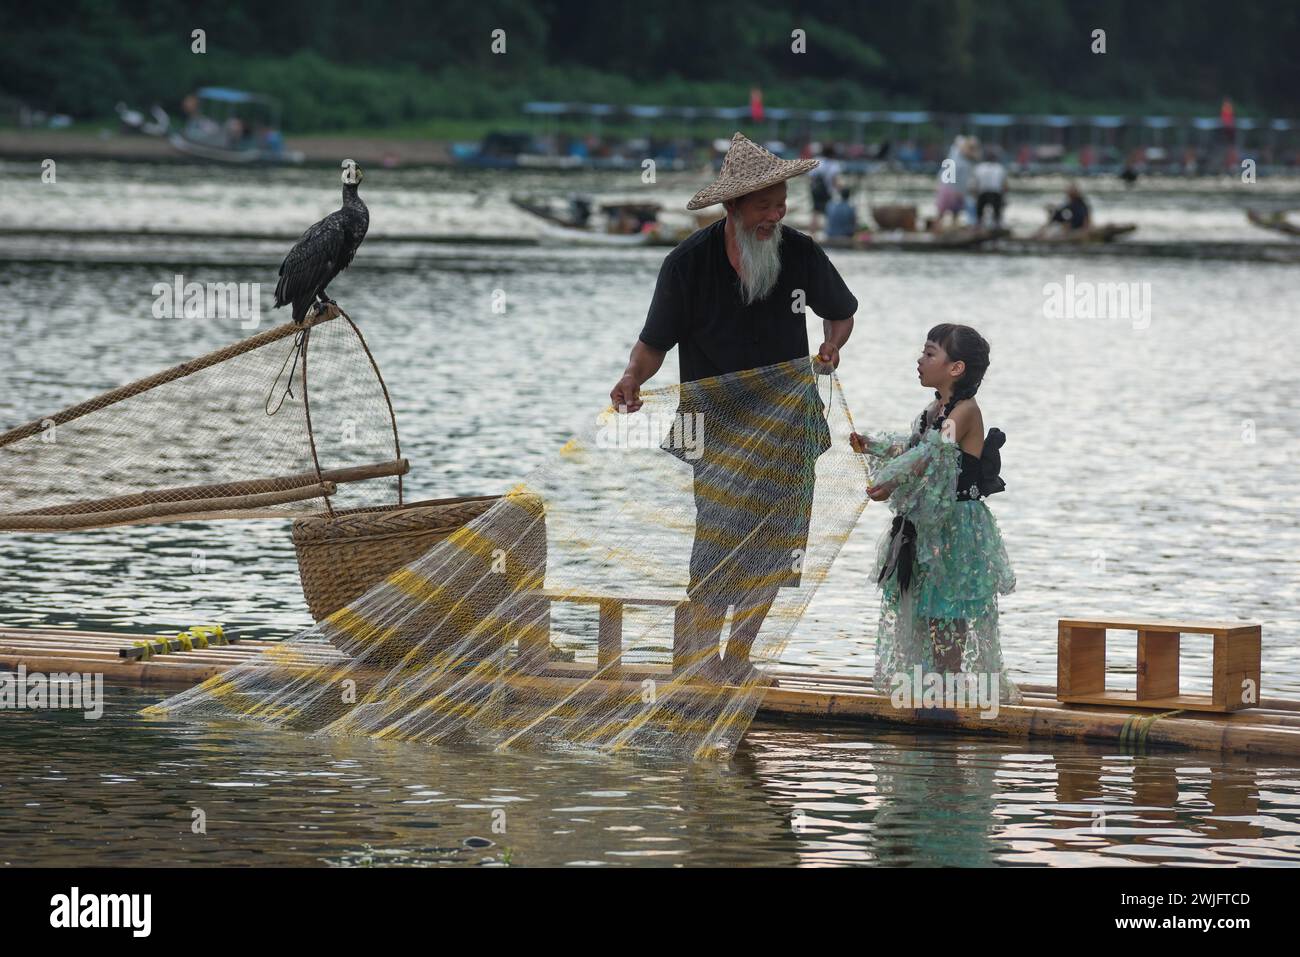 Ein kleines Mädchen macht Fotos mit dem Fischer. Das Fotografieren mit dem Fischer ist ein Touristenprojekt, das Touristen anzieht. Stockfoto